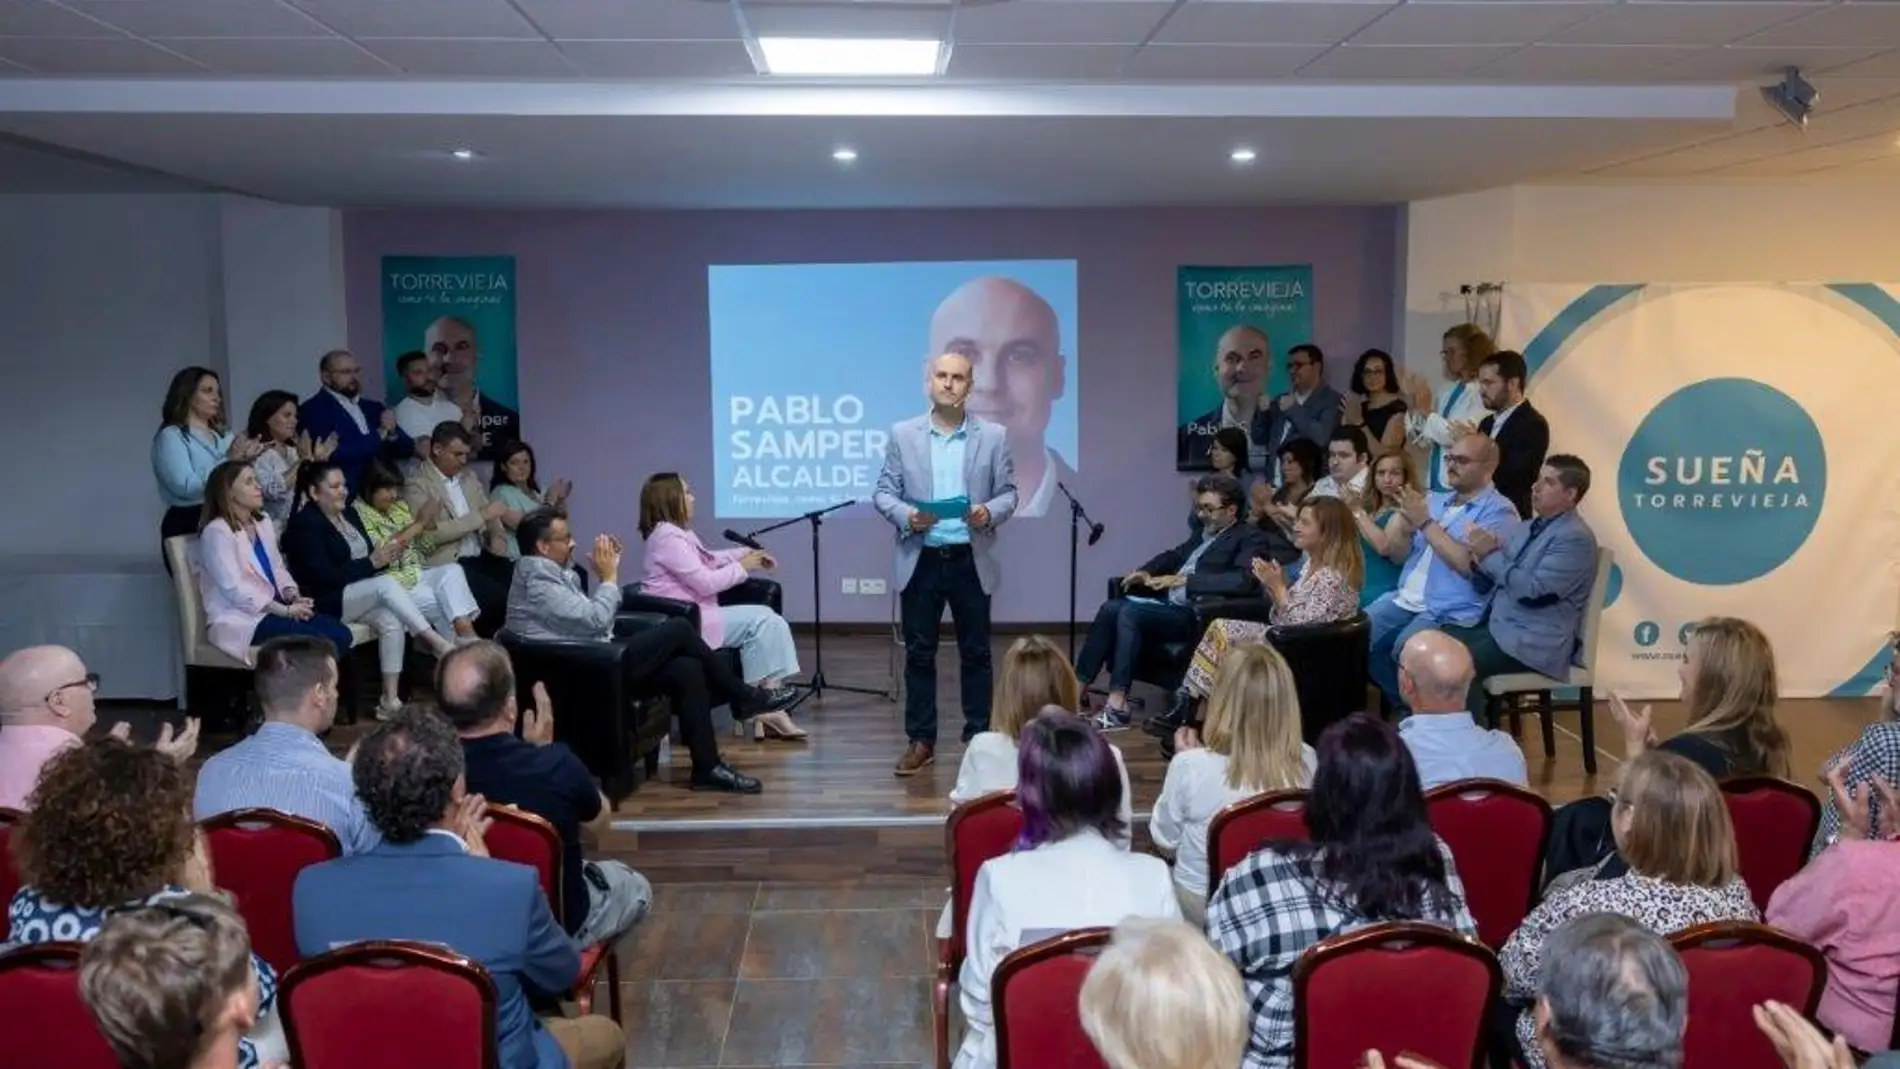 Pablo Samper (Sueña Torrevieja) presenta su proyecto electoral 'Torrevieja como tú la imaginas'